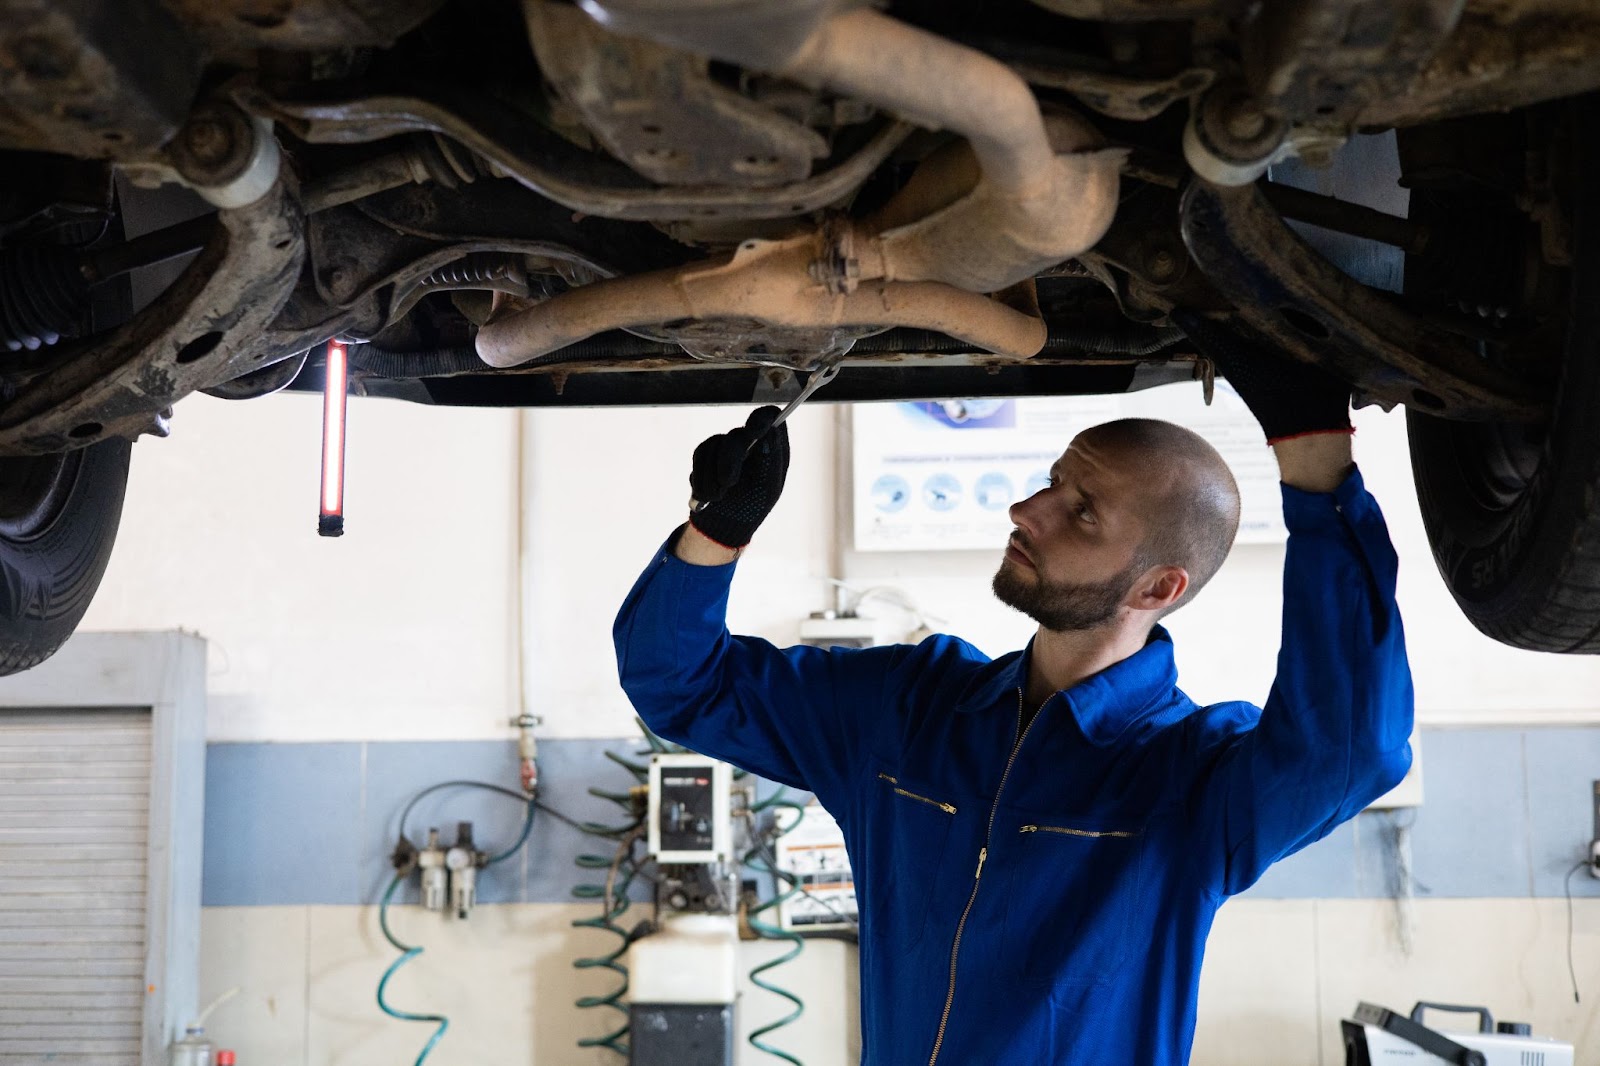 Em uma oficina, um mecânico vestindo um macacão azul realiza a manutenção preventiva em um veículo, verificando as peças inferiores com uma ferramenta apropriada.